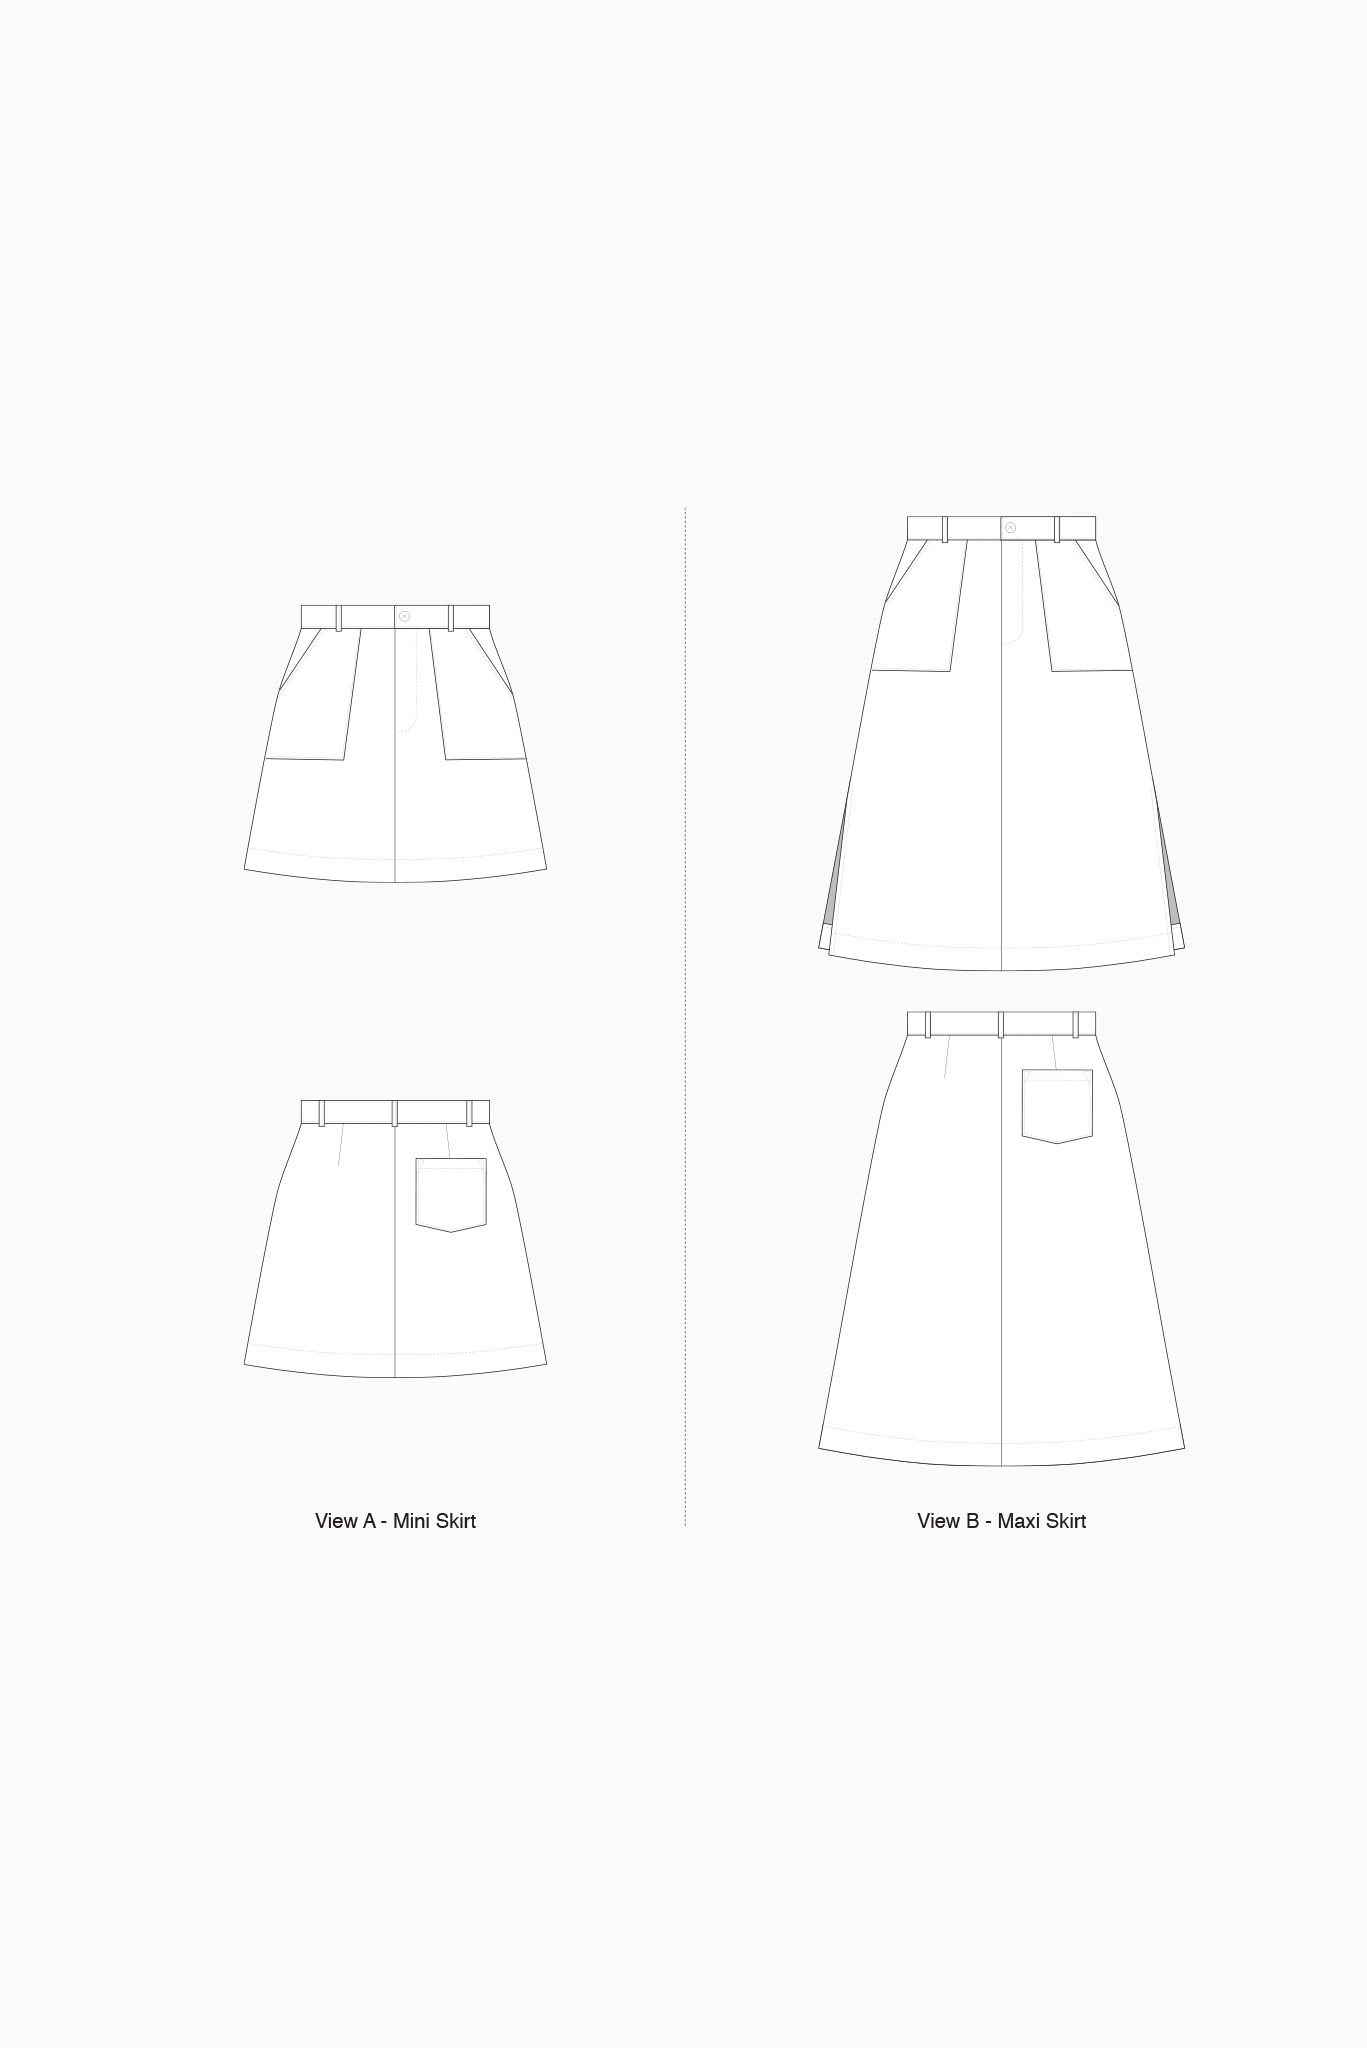 Bottlebrush Maxi Skirt Sewing Kit